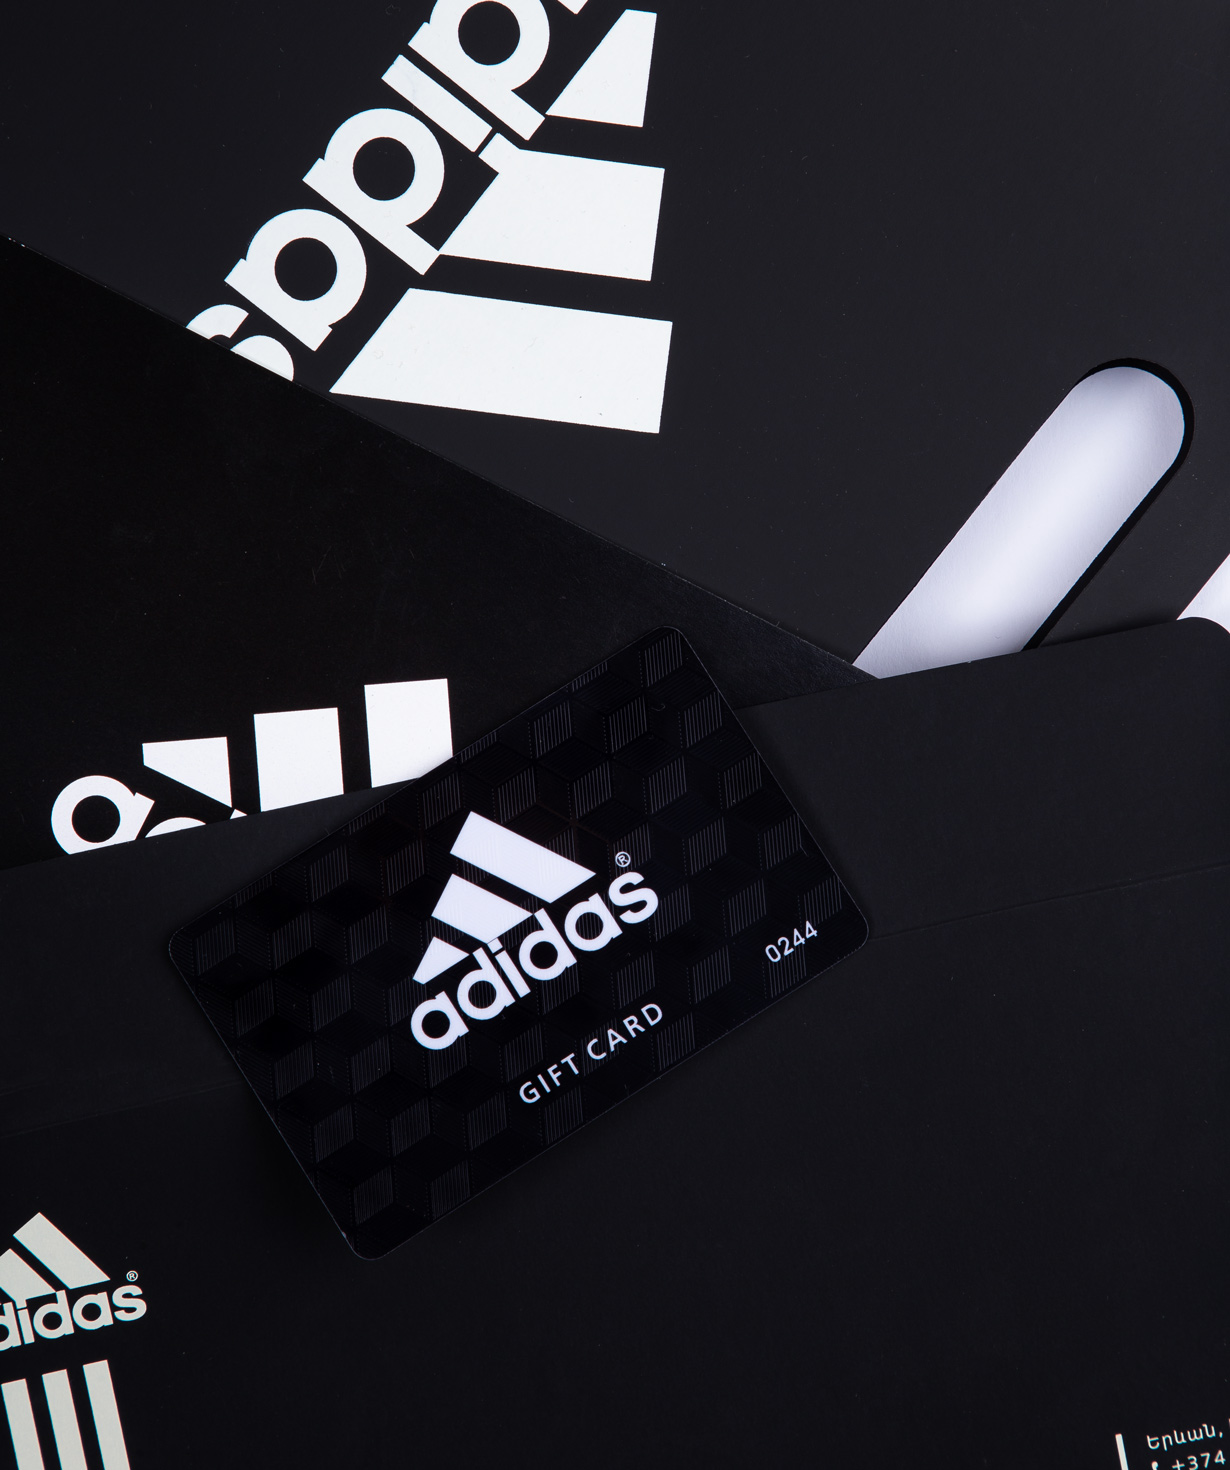 Նվեր-քարտ «Adidas» 100000 դրամ